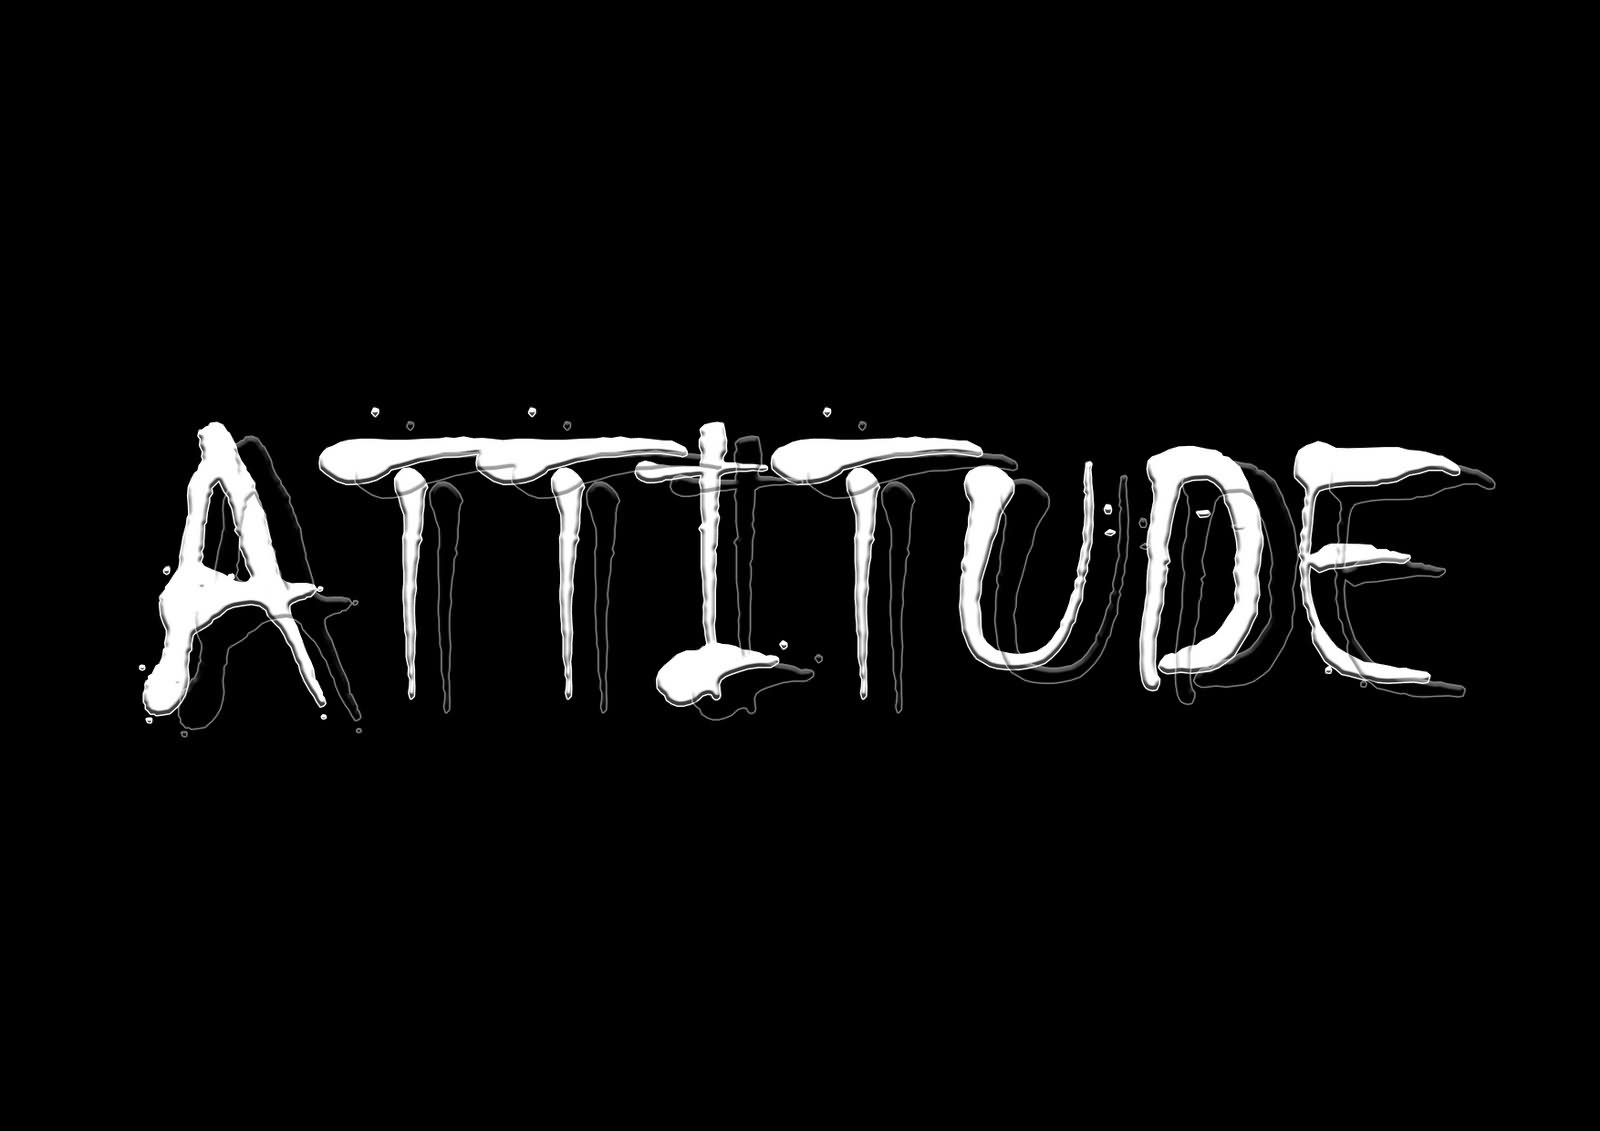 75+] Attitude Wallpaper - WallpaperSafari